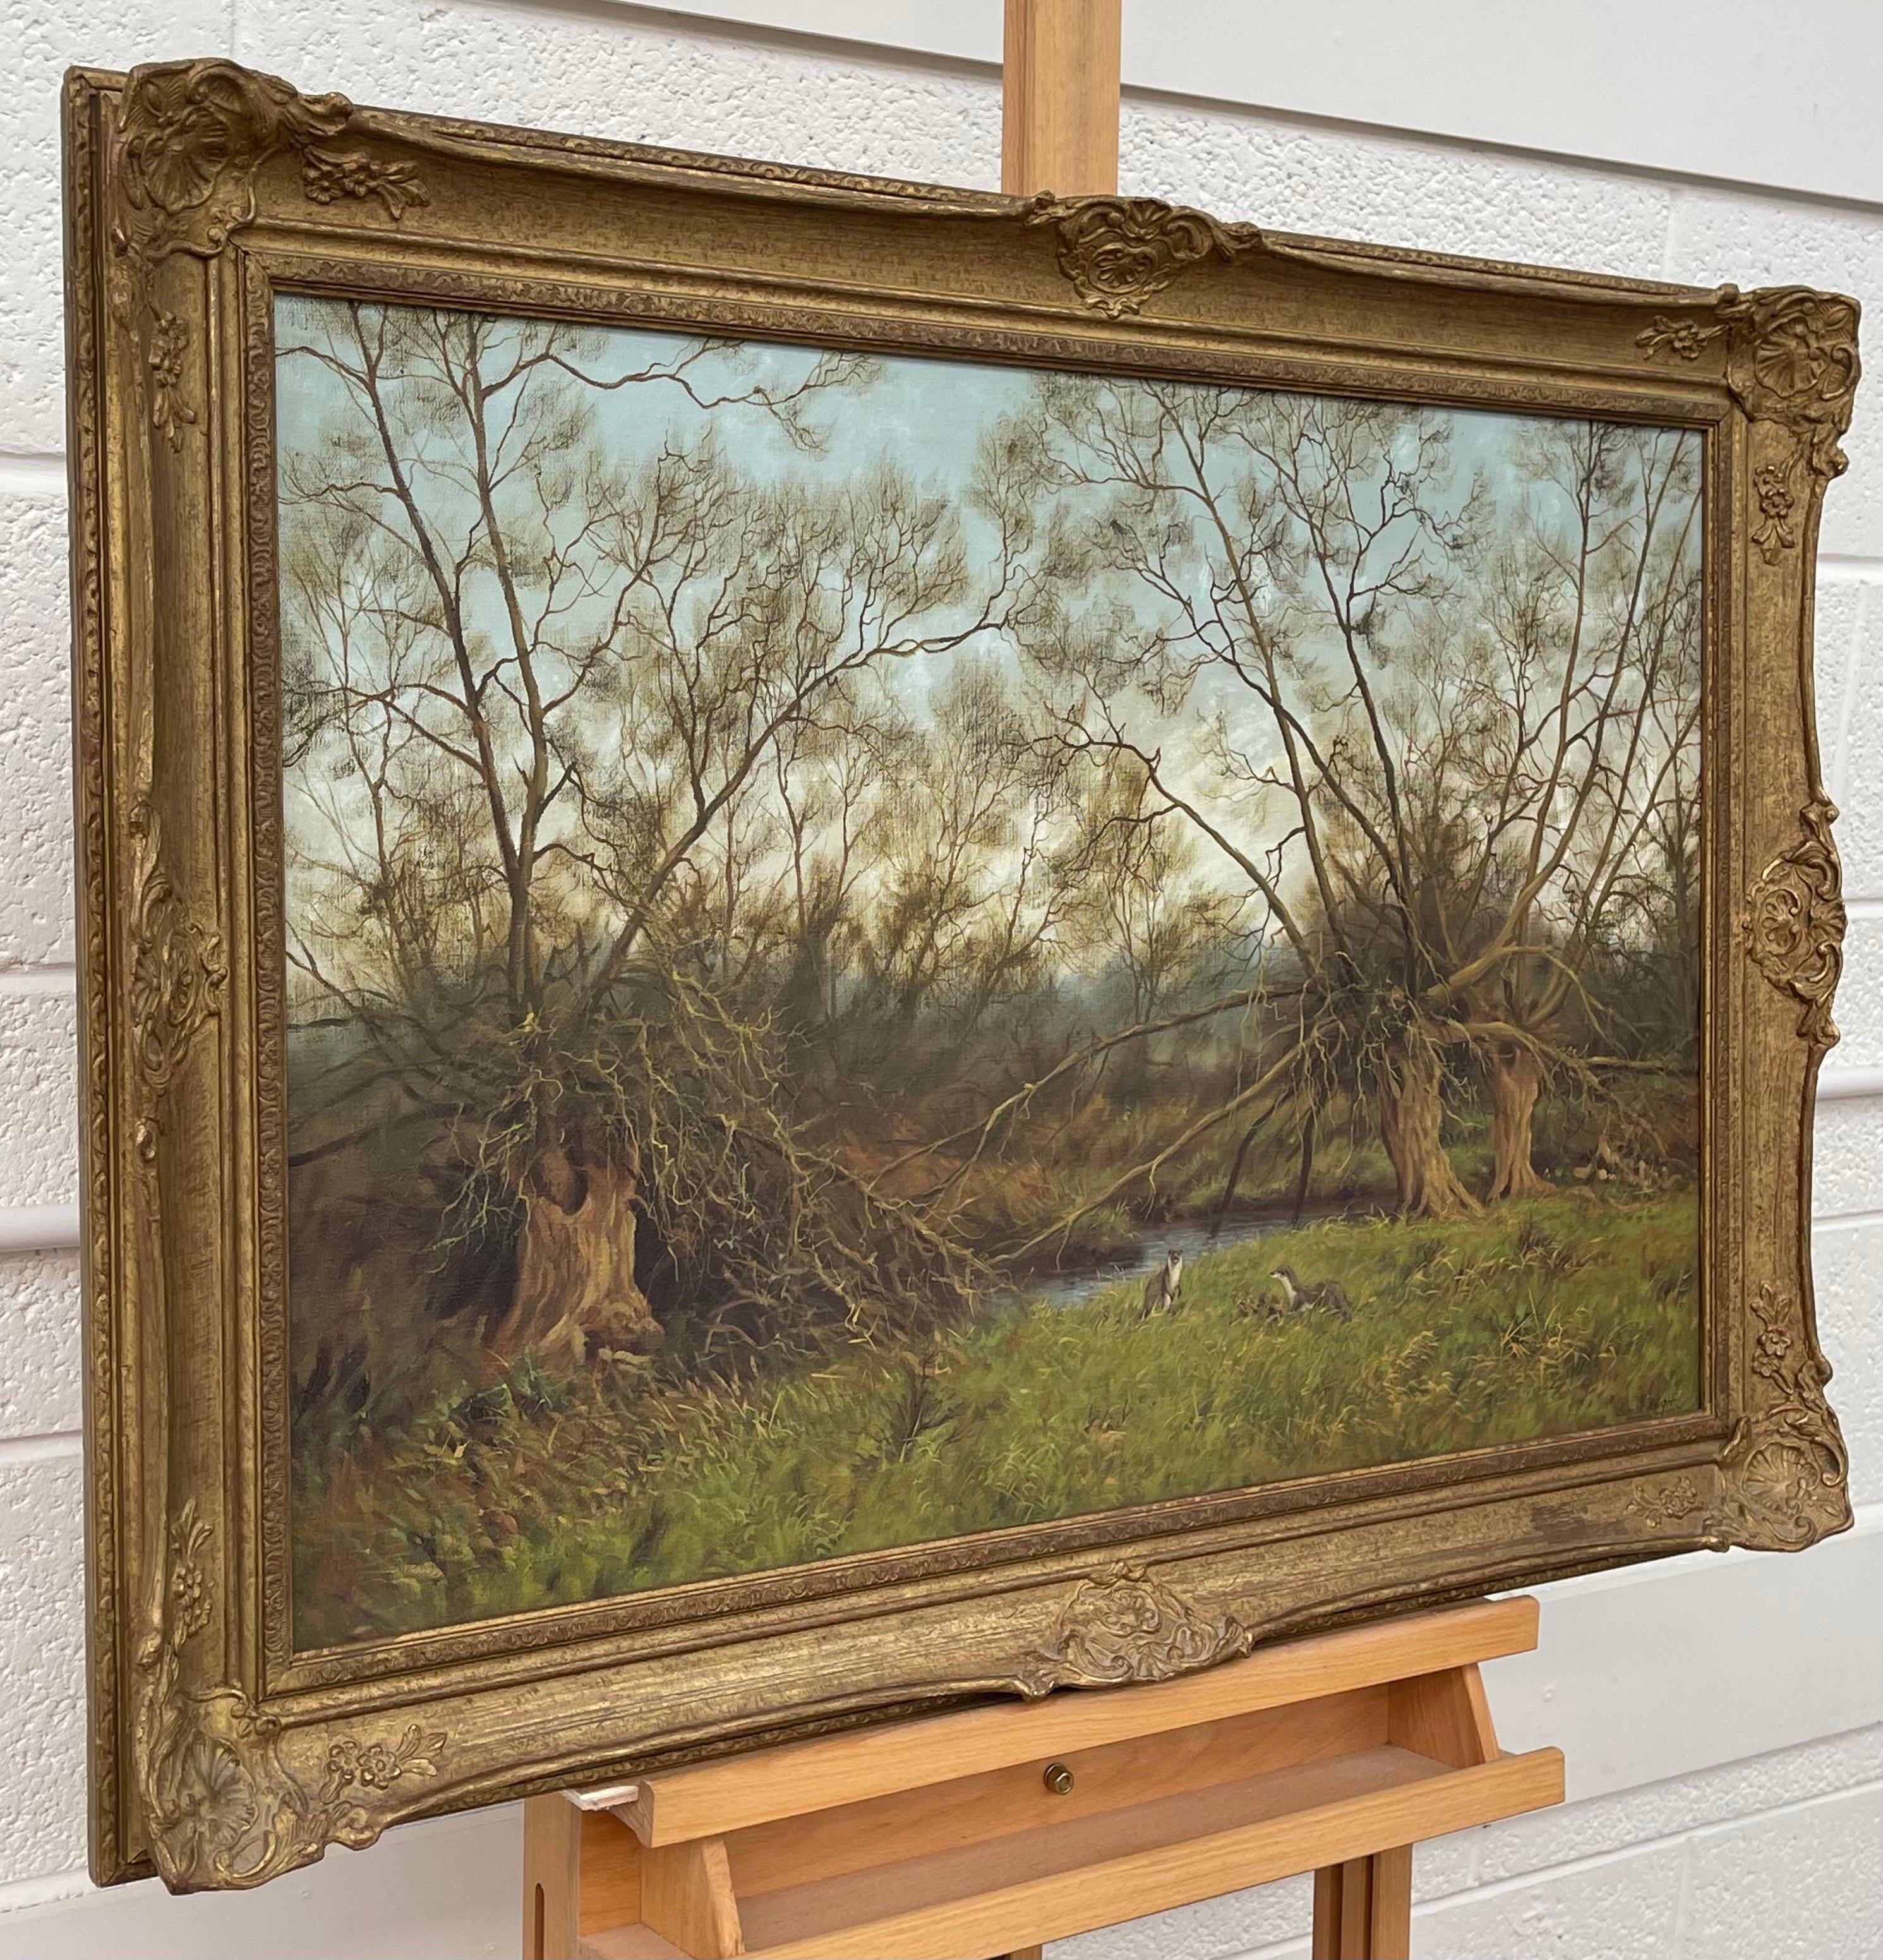 Gemälde der englischen Landschaft mit Flussottern von Modern British artist – Painting von James Wright